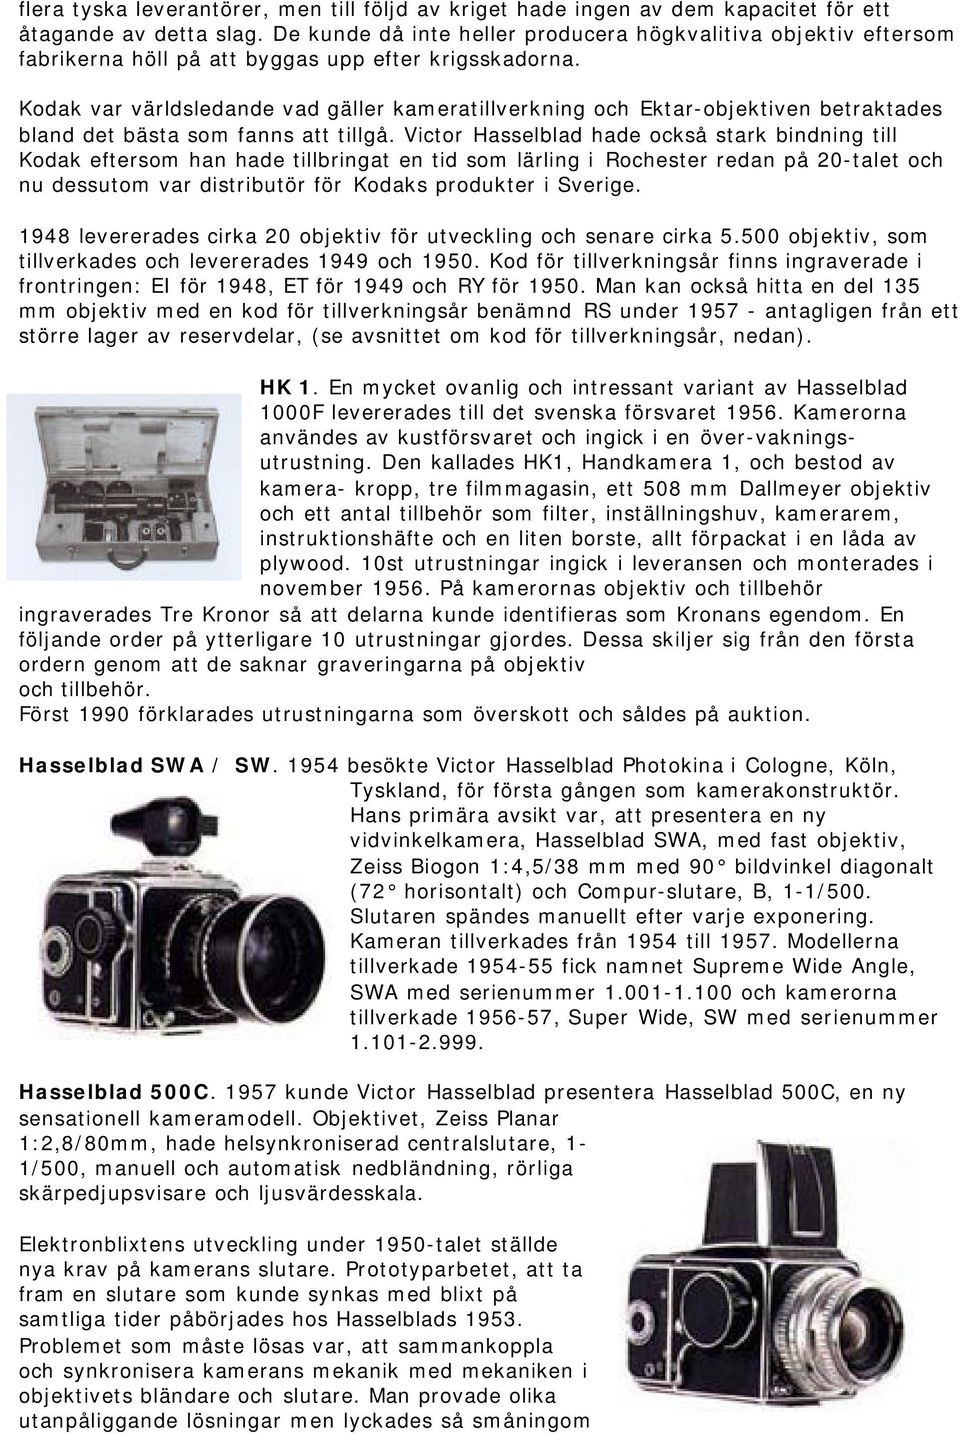 Kodak var världsledande vad gäller kameratillverkning och Ektar-objektiven betraktades bland det bästa som fanns att tillgå.